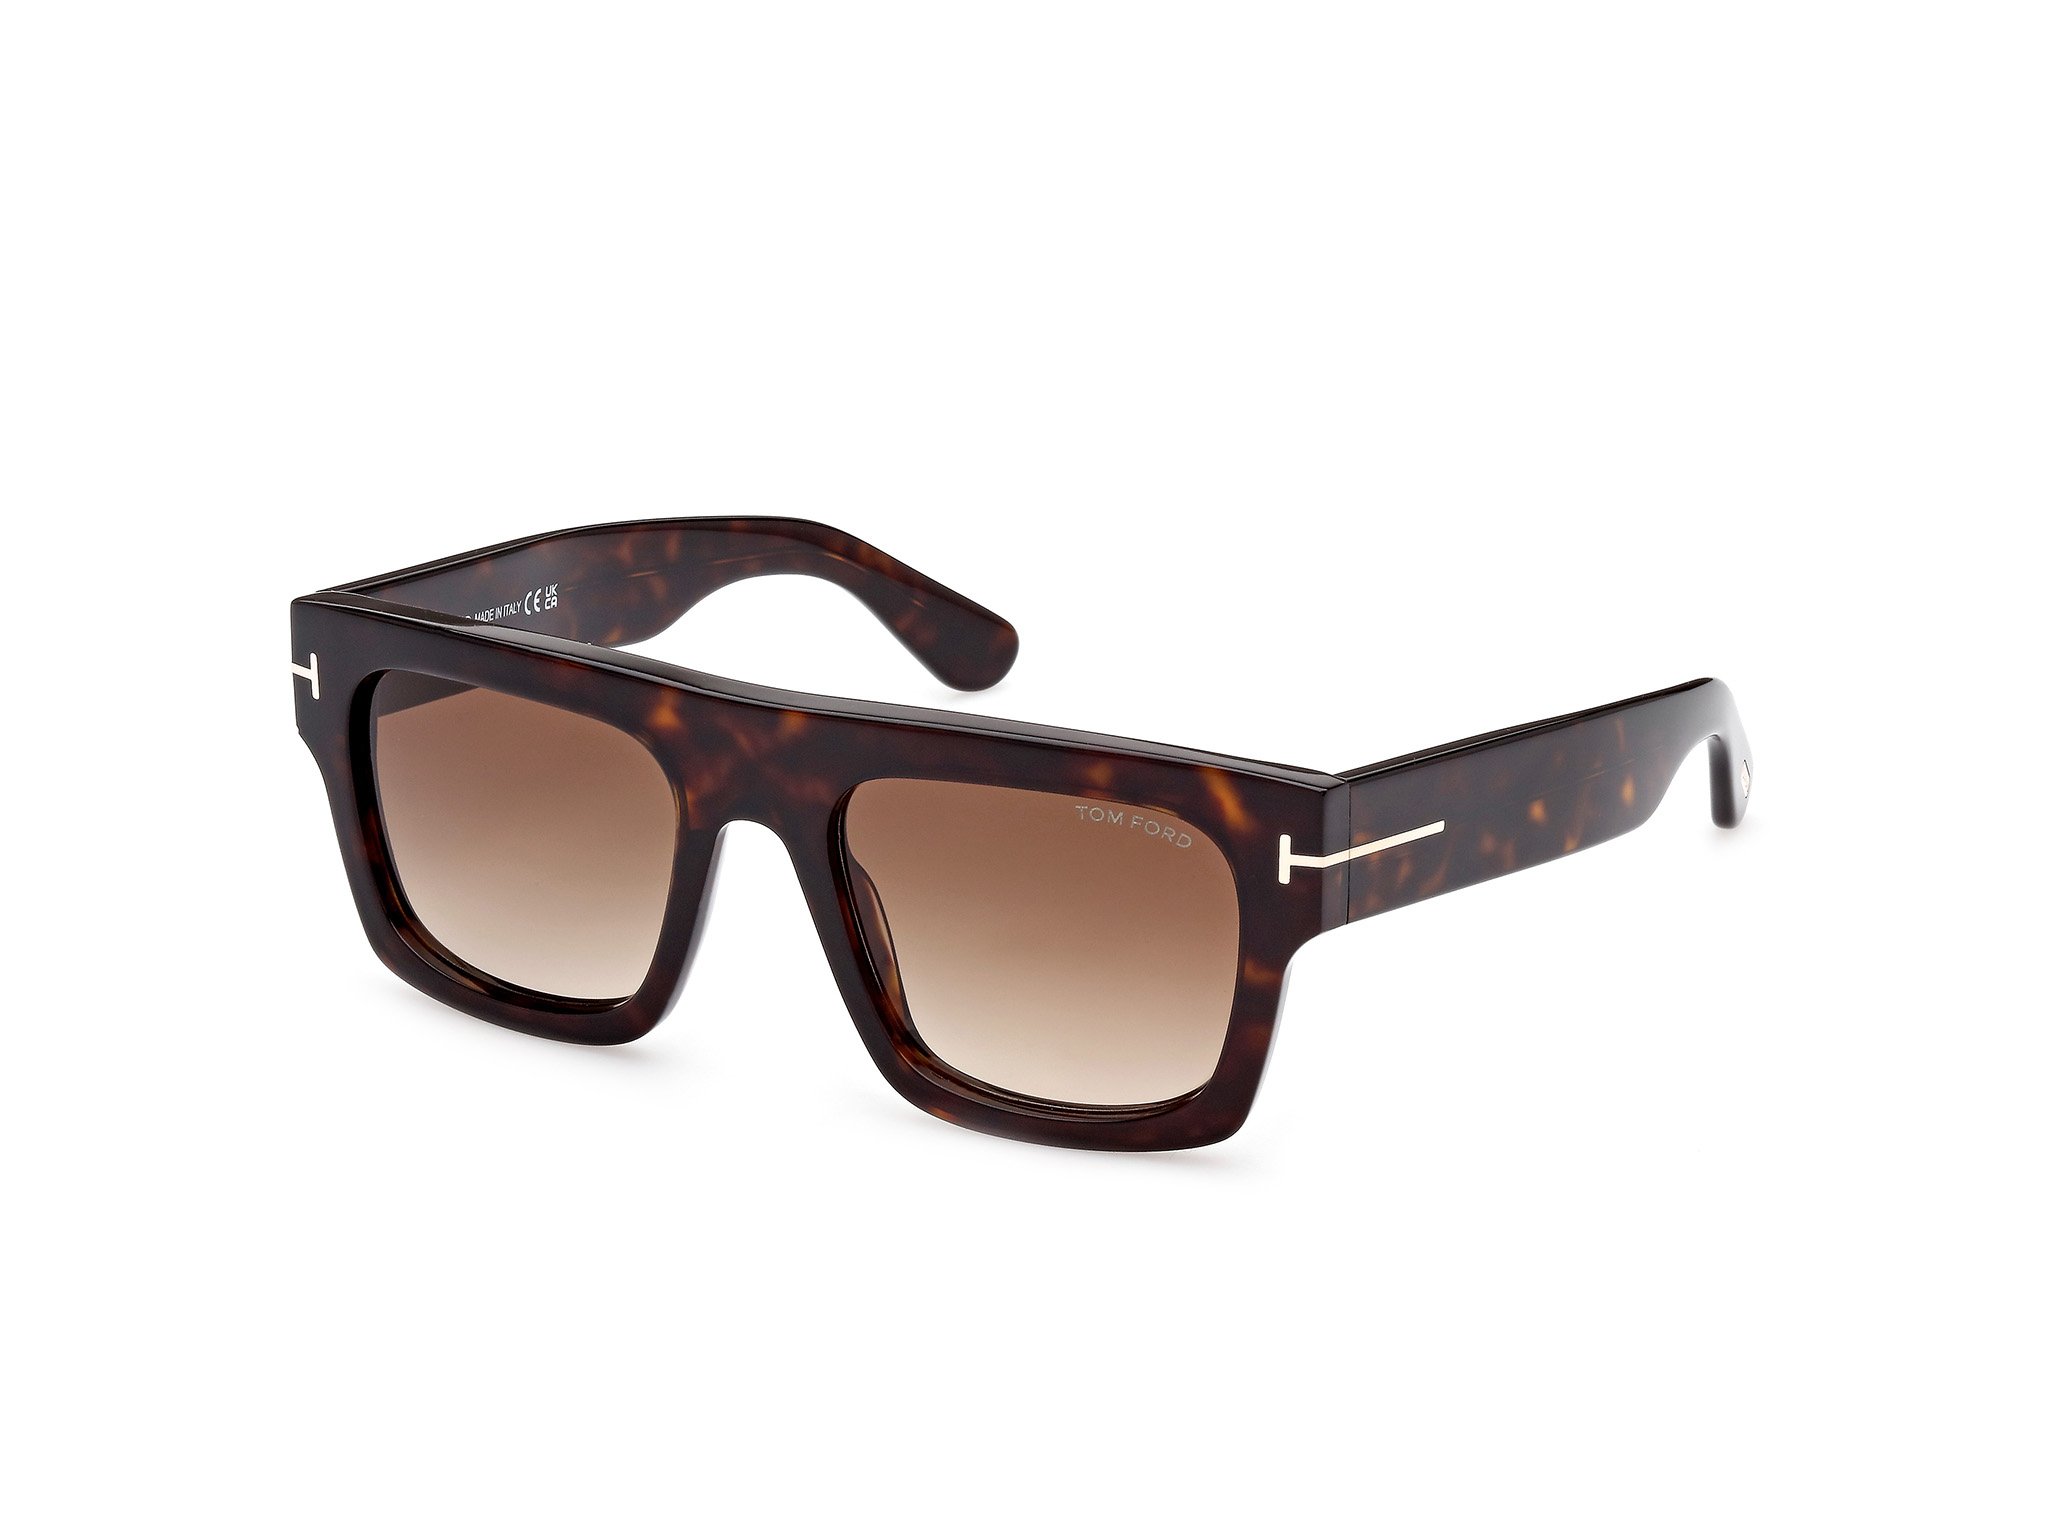 Das Bild zeigt die Sonnenbrille FT0711 52F von der Marke Tom Ford in schwarz.